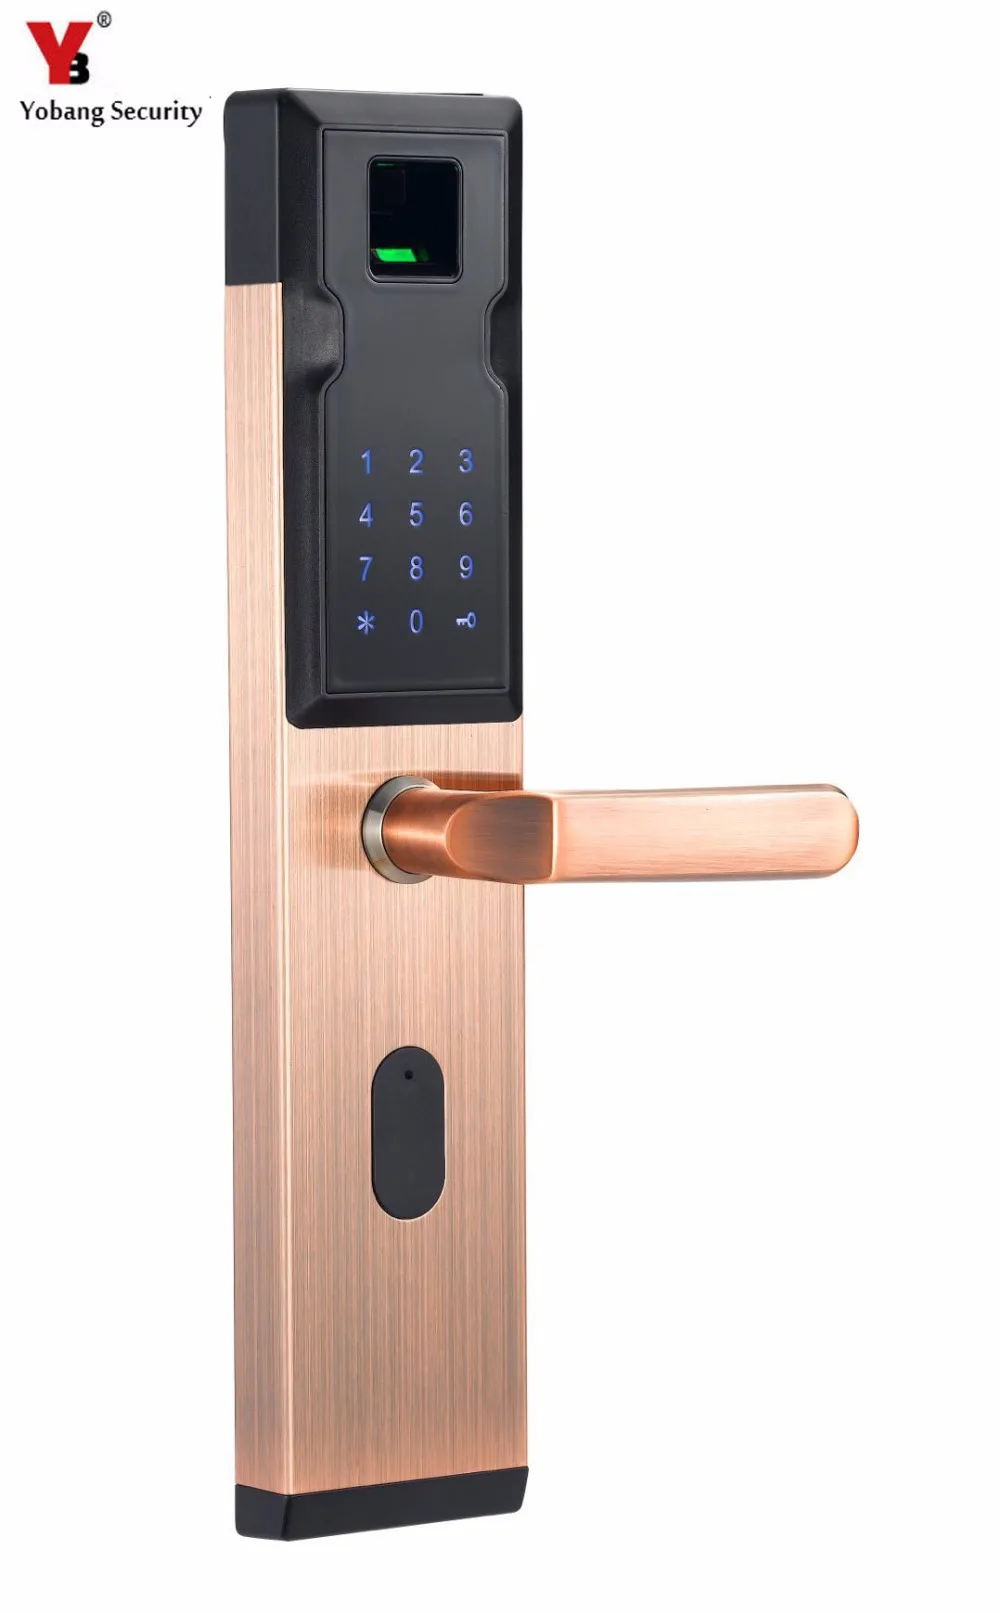 Yobang безопасности электронный замок Smart отпечатков пальцев + пароль + 4 карты + 2 механические клавиши Anti-theft Интеллектуальный дверной замок